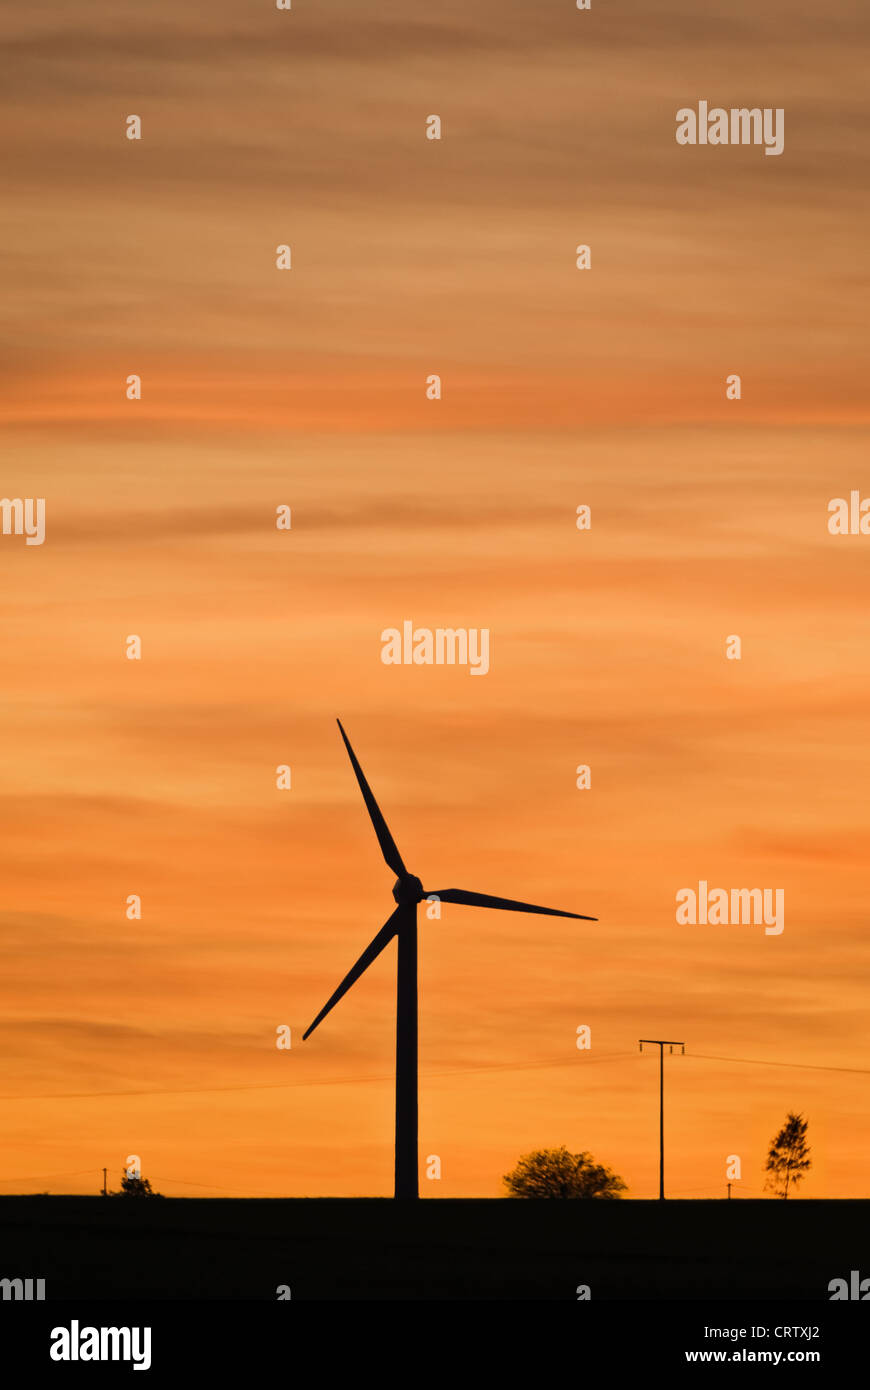 Wind turbine at sunset Stock Photo